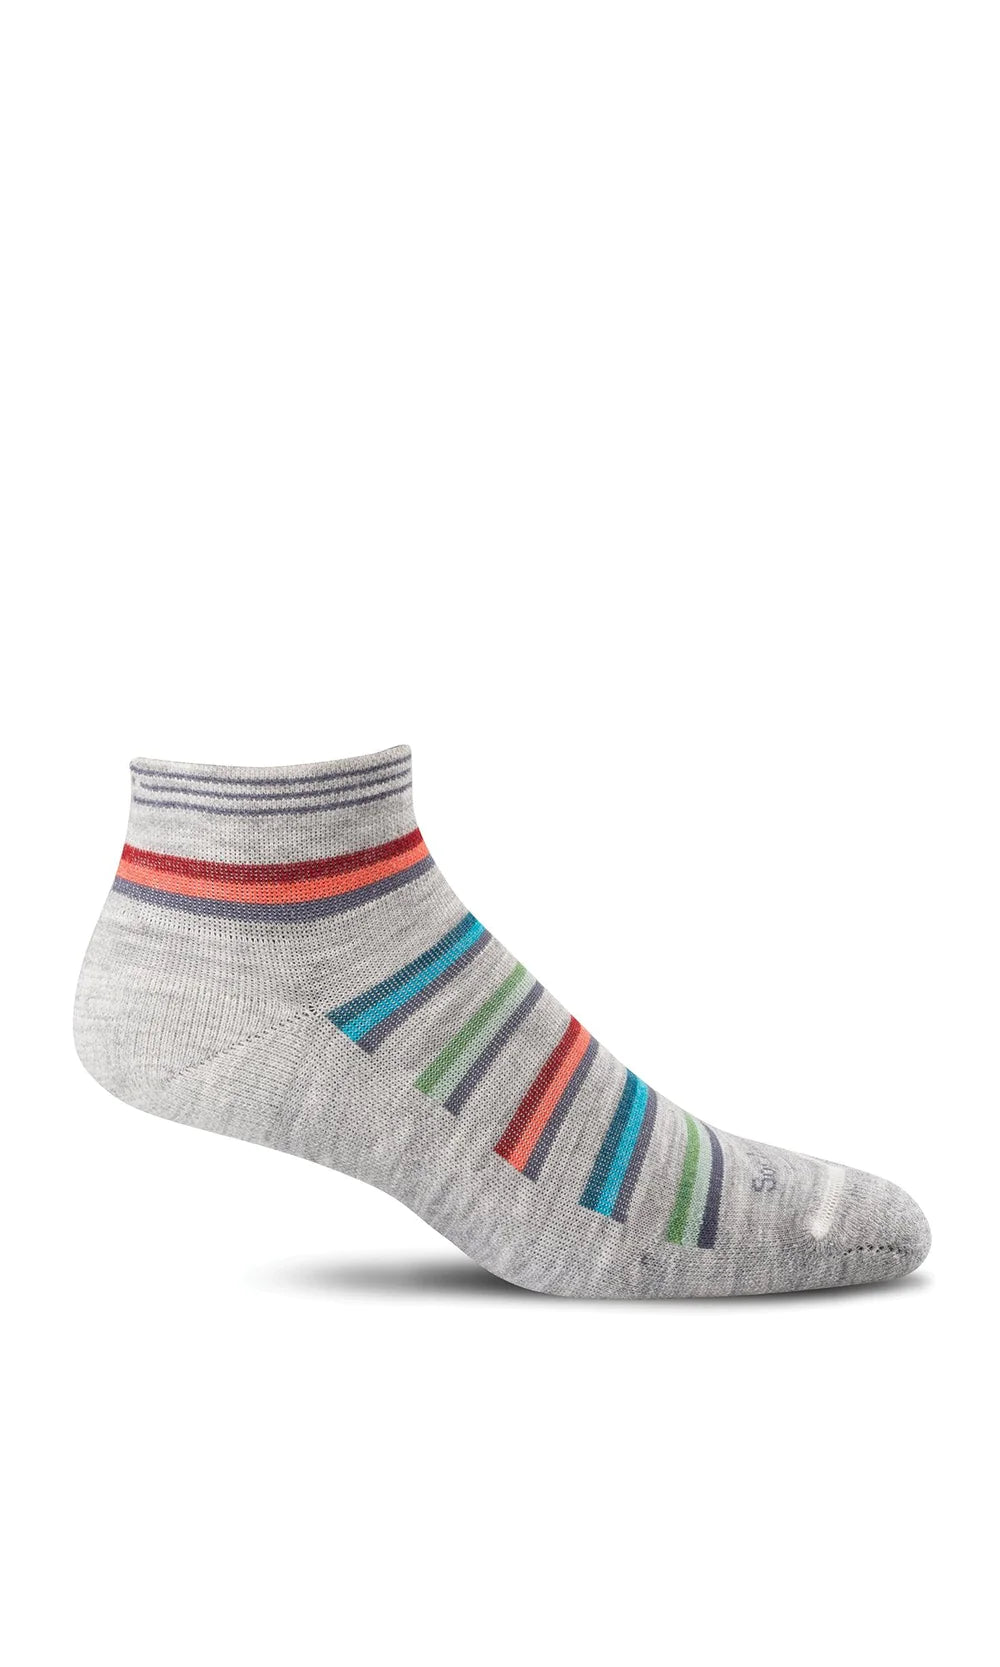 Sockwell - Women's Sport Ease Bunion Relief Socks - Grey